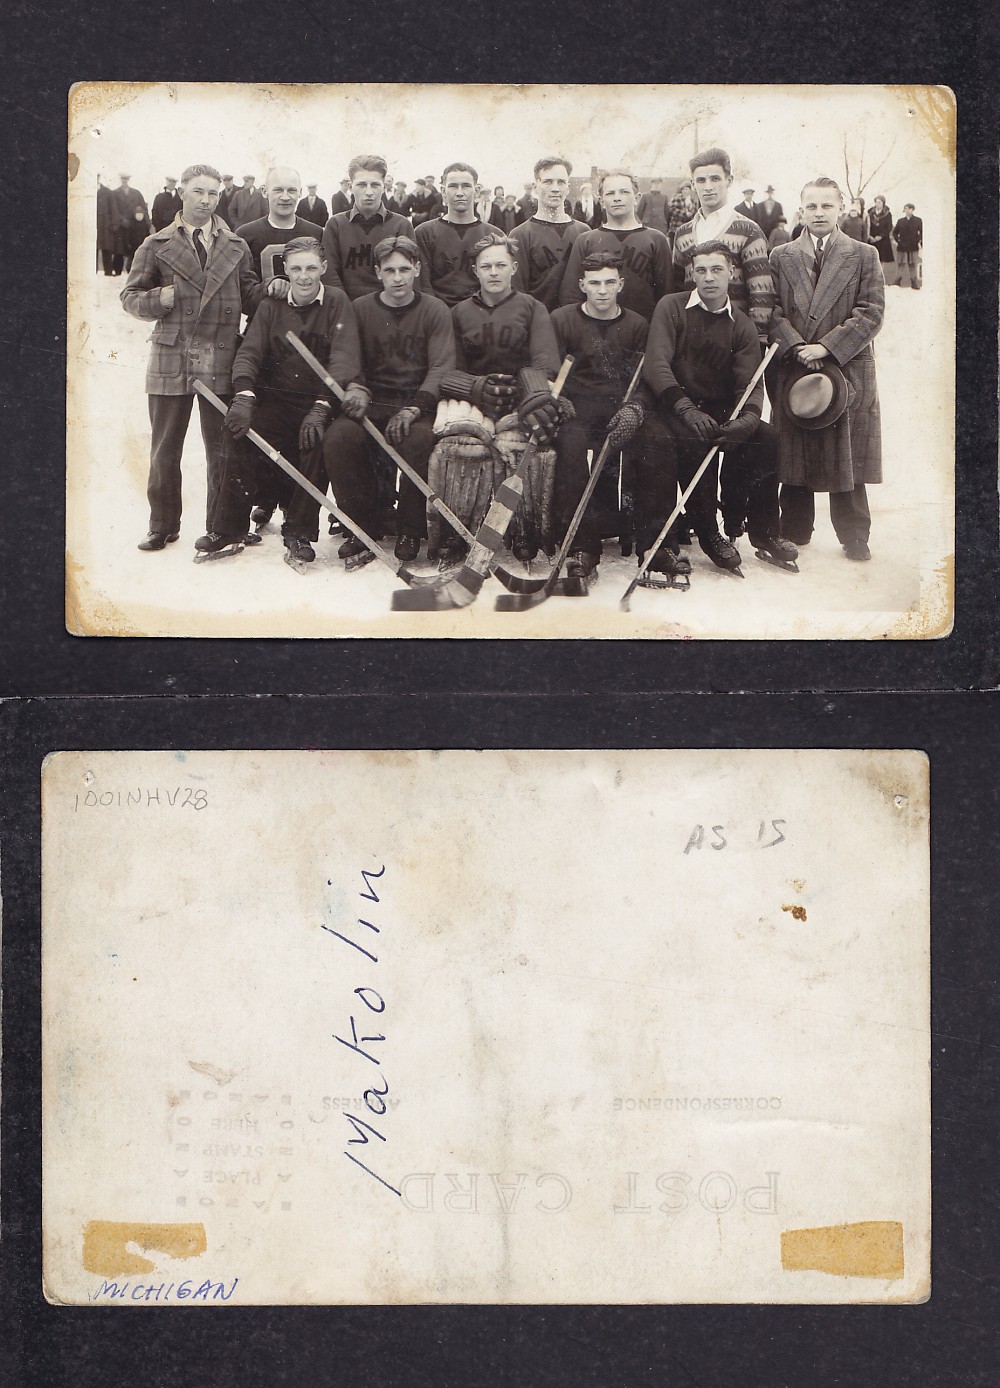 1920'S MAKOLIN HOCKEY TEAM POST CARD photo